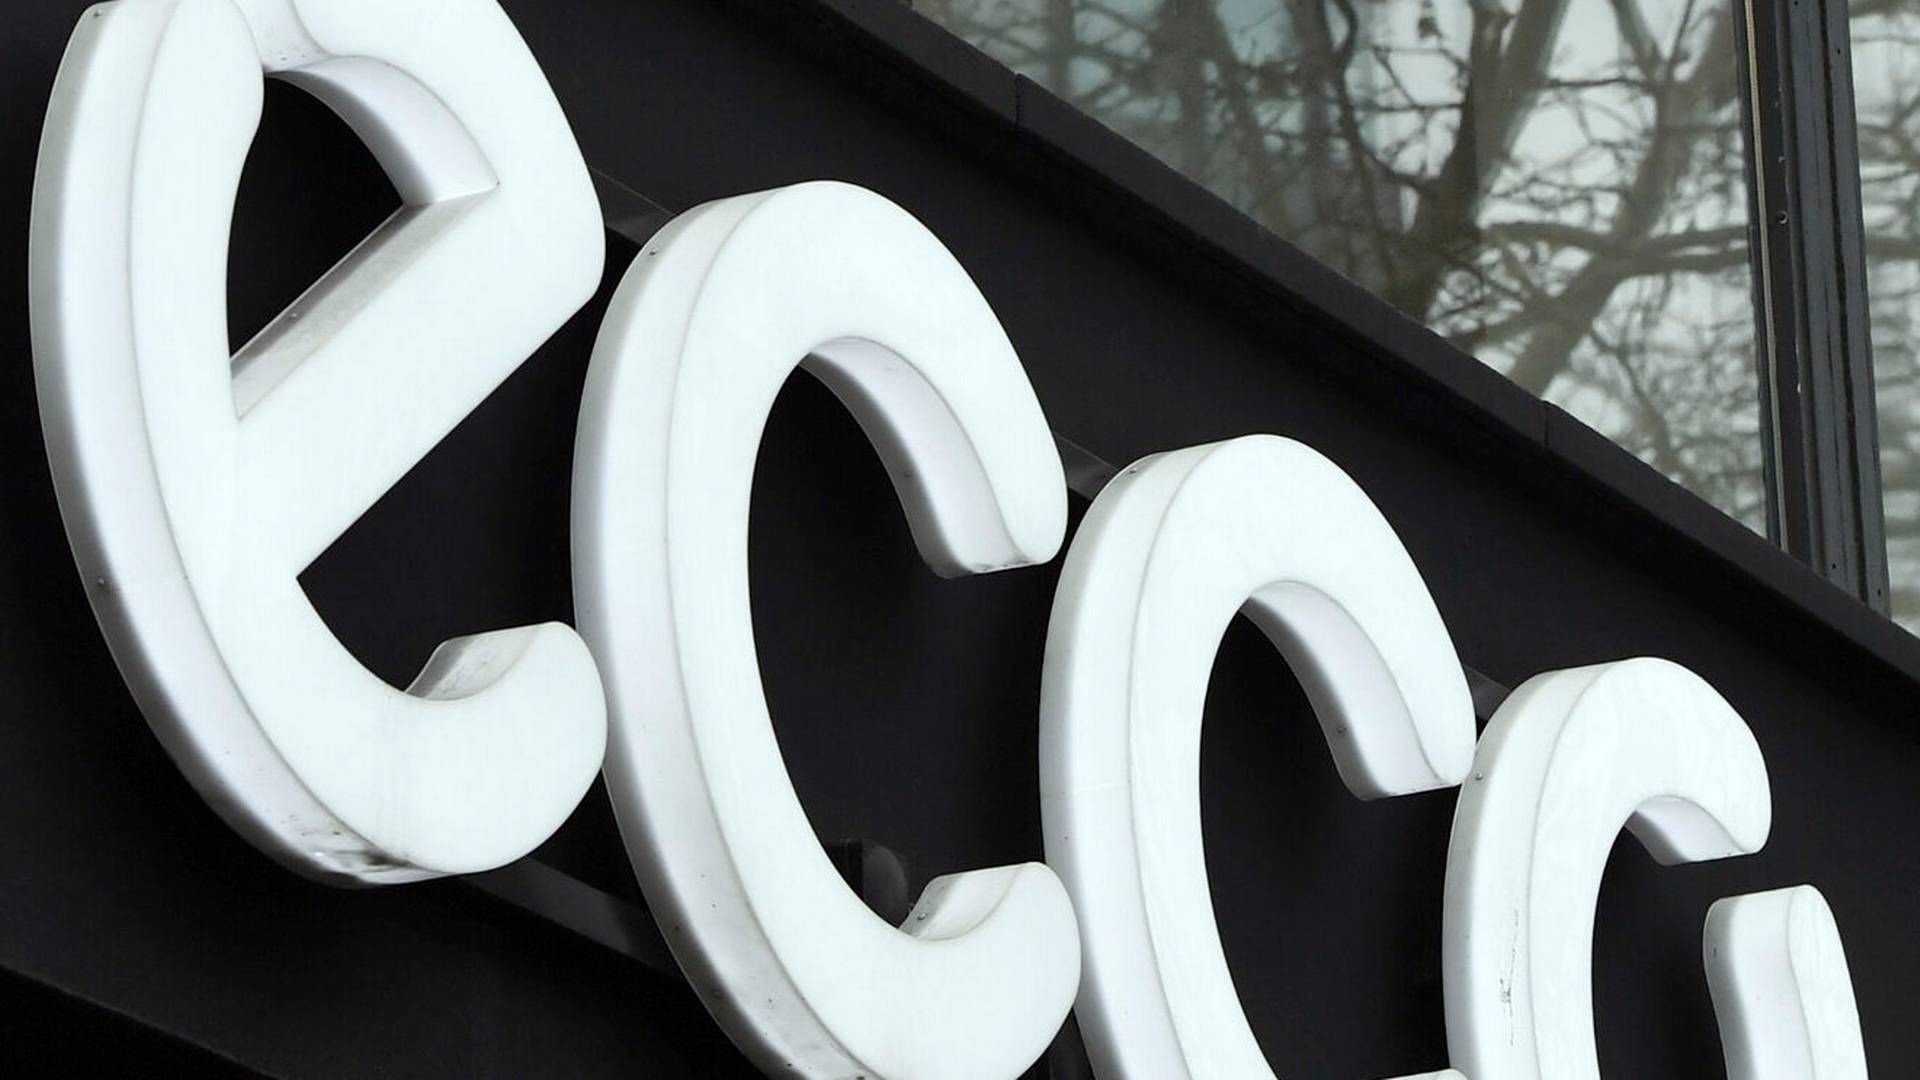 Ecco har salg i omkring 90 lande og har selv over 2.100 butikker globalt. | Foto: Jens Kalaene/ap/ritzau Scanpix